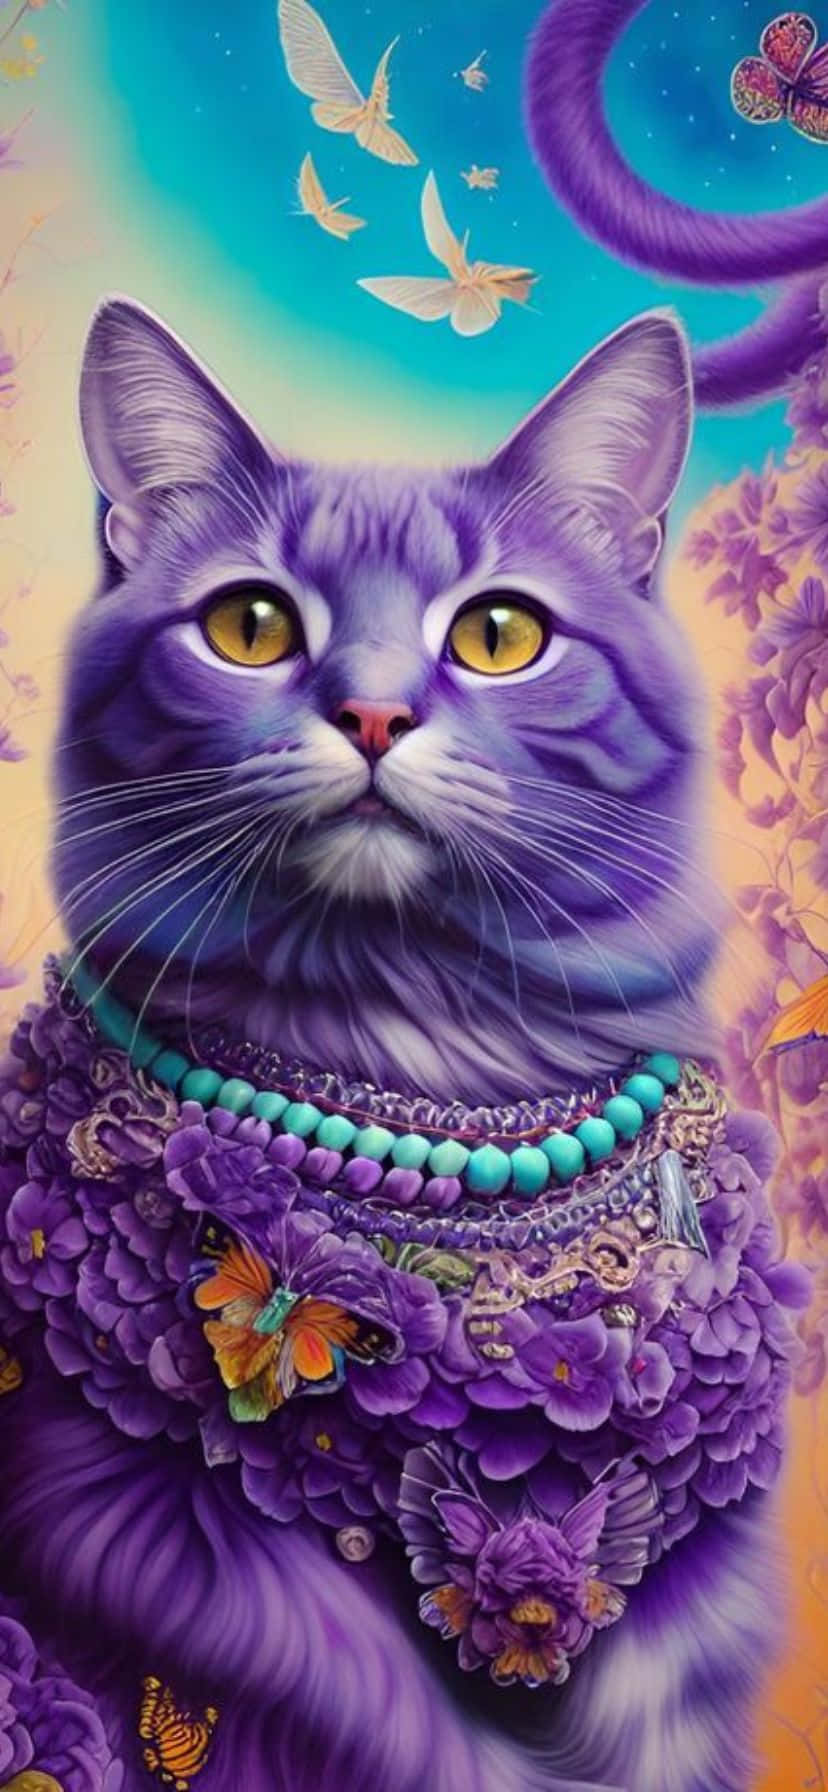 Mystical_ Purple_ Cat_ Fantasy_ Artwork.jpg Wallpaper